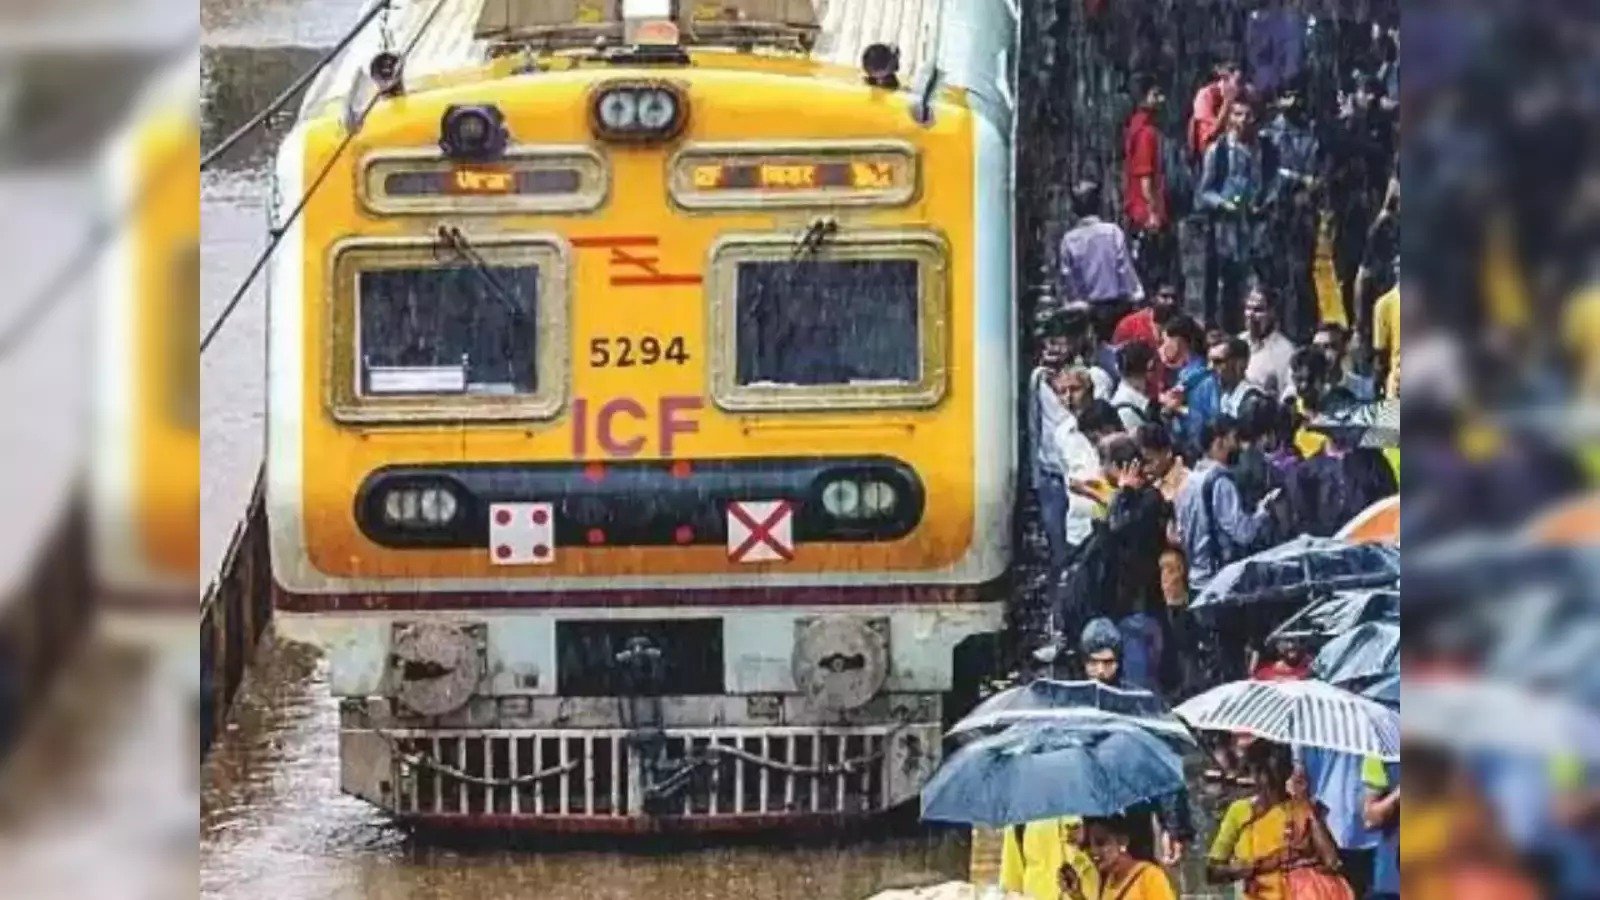 Video: रेलवे स्टेशन में बारिश में भींग रही थी गर्लफ्रेंड, बॉयफ्रेंड ने अचानक कर दिया ऐसा कांड कि पहुंच गई पुलिस, रोकने पड़े ट्रेन के पहिए